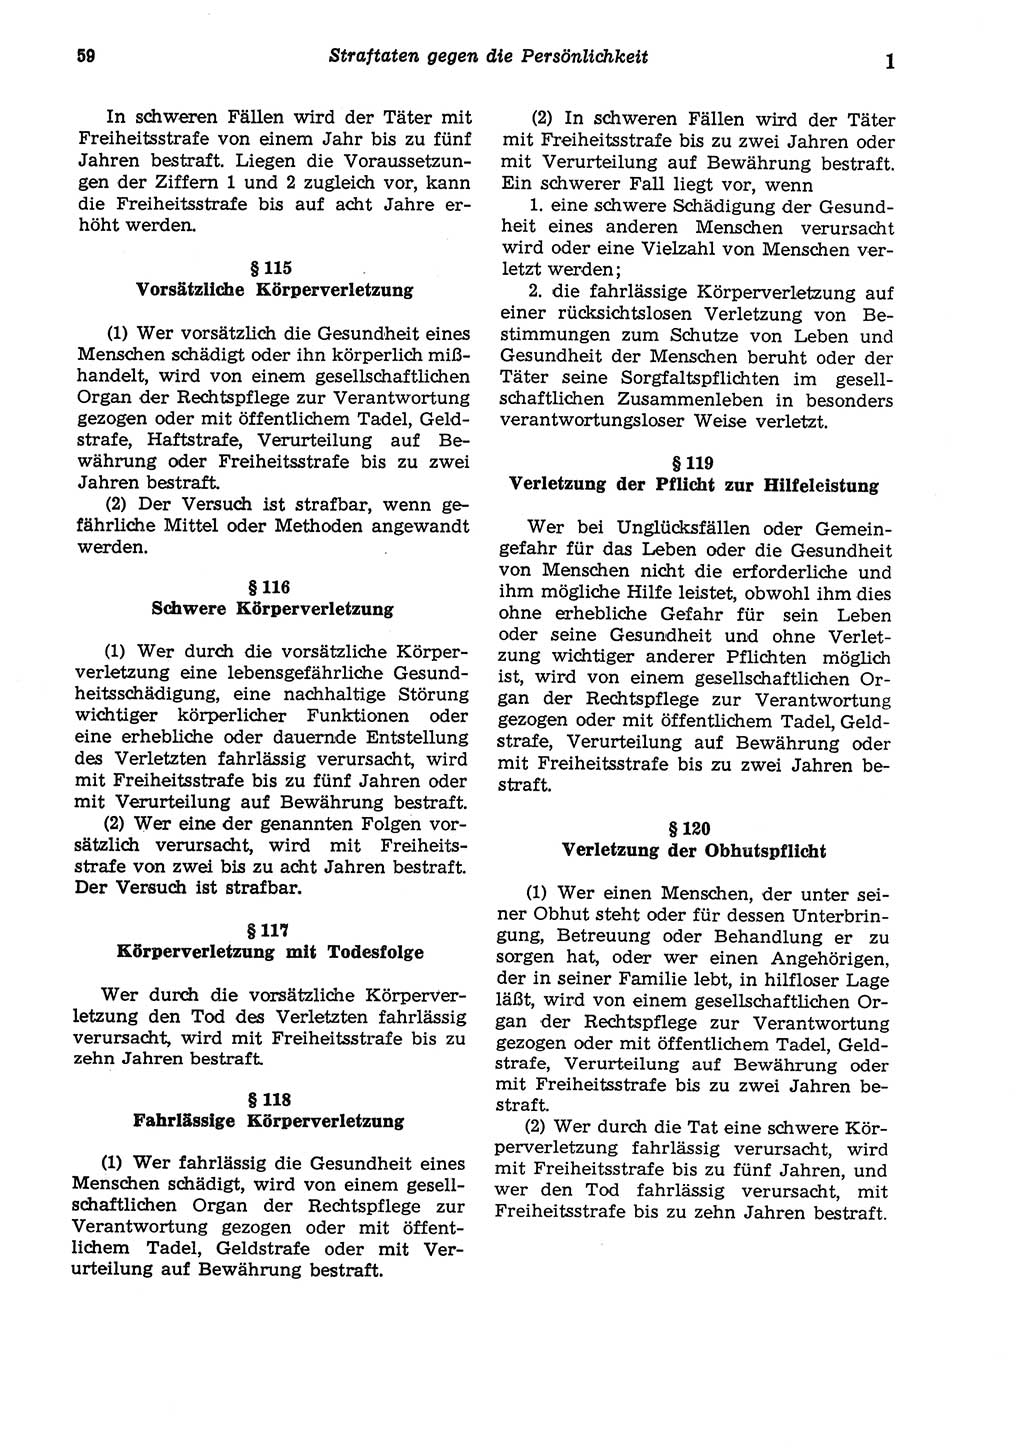 Strafgesetzbuch (StGB) der Deutschen Demokratischen Republik (DDR) und angrenzende Gesetze und Bestimmungen 1975, Seite 59 (StGB DDR Ges. Best. 1975, S. 59)